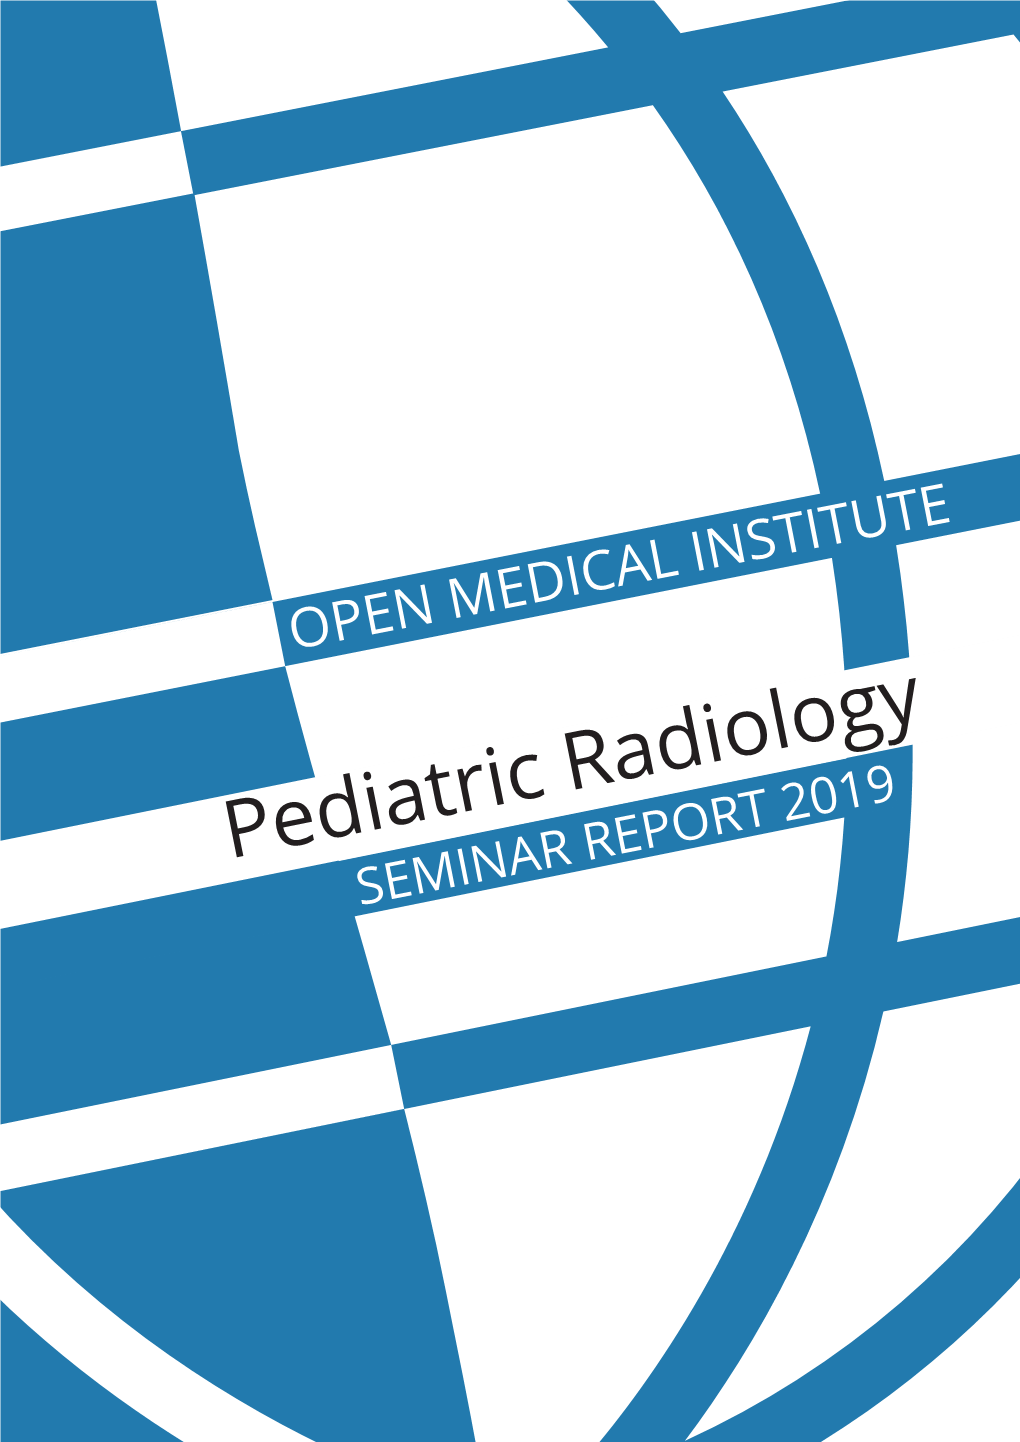 Pediatric Radiology SEMINAR REPORT 2019